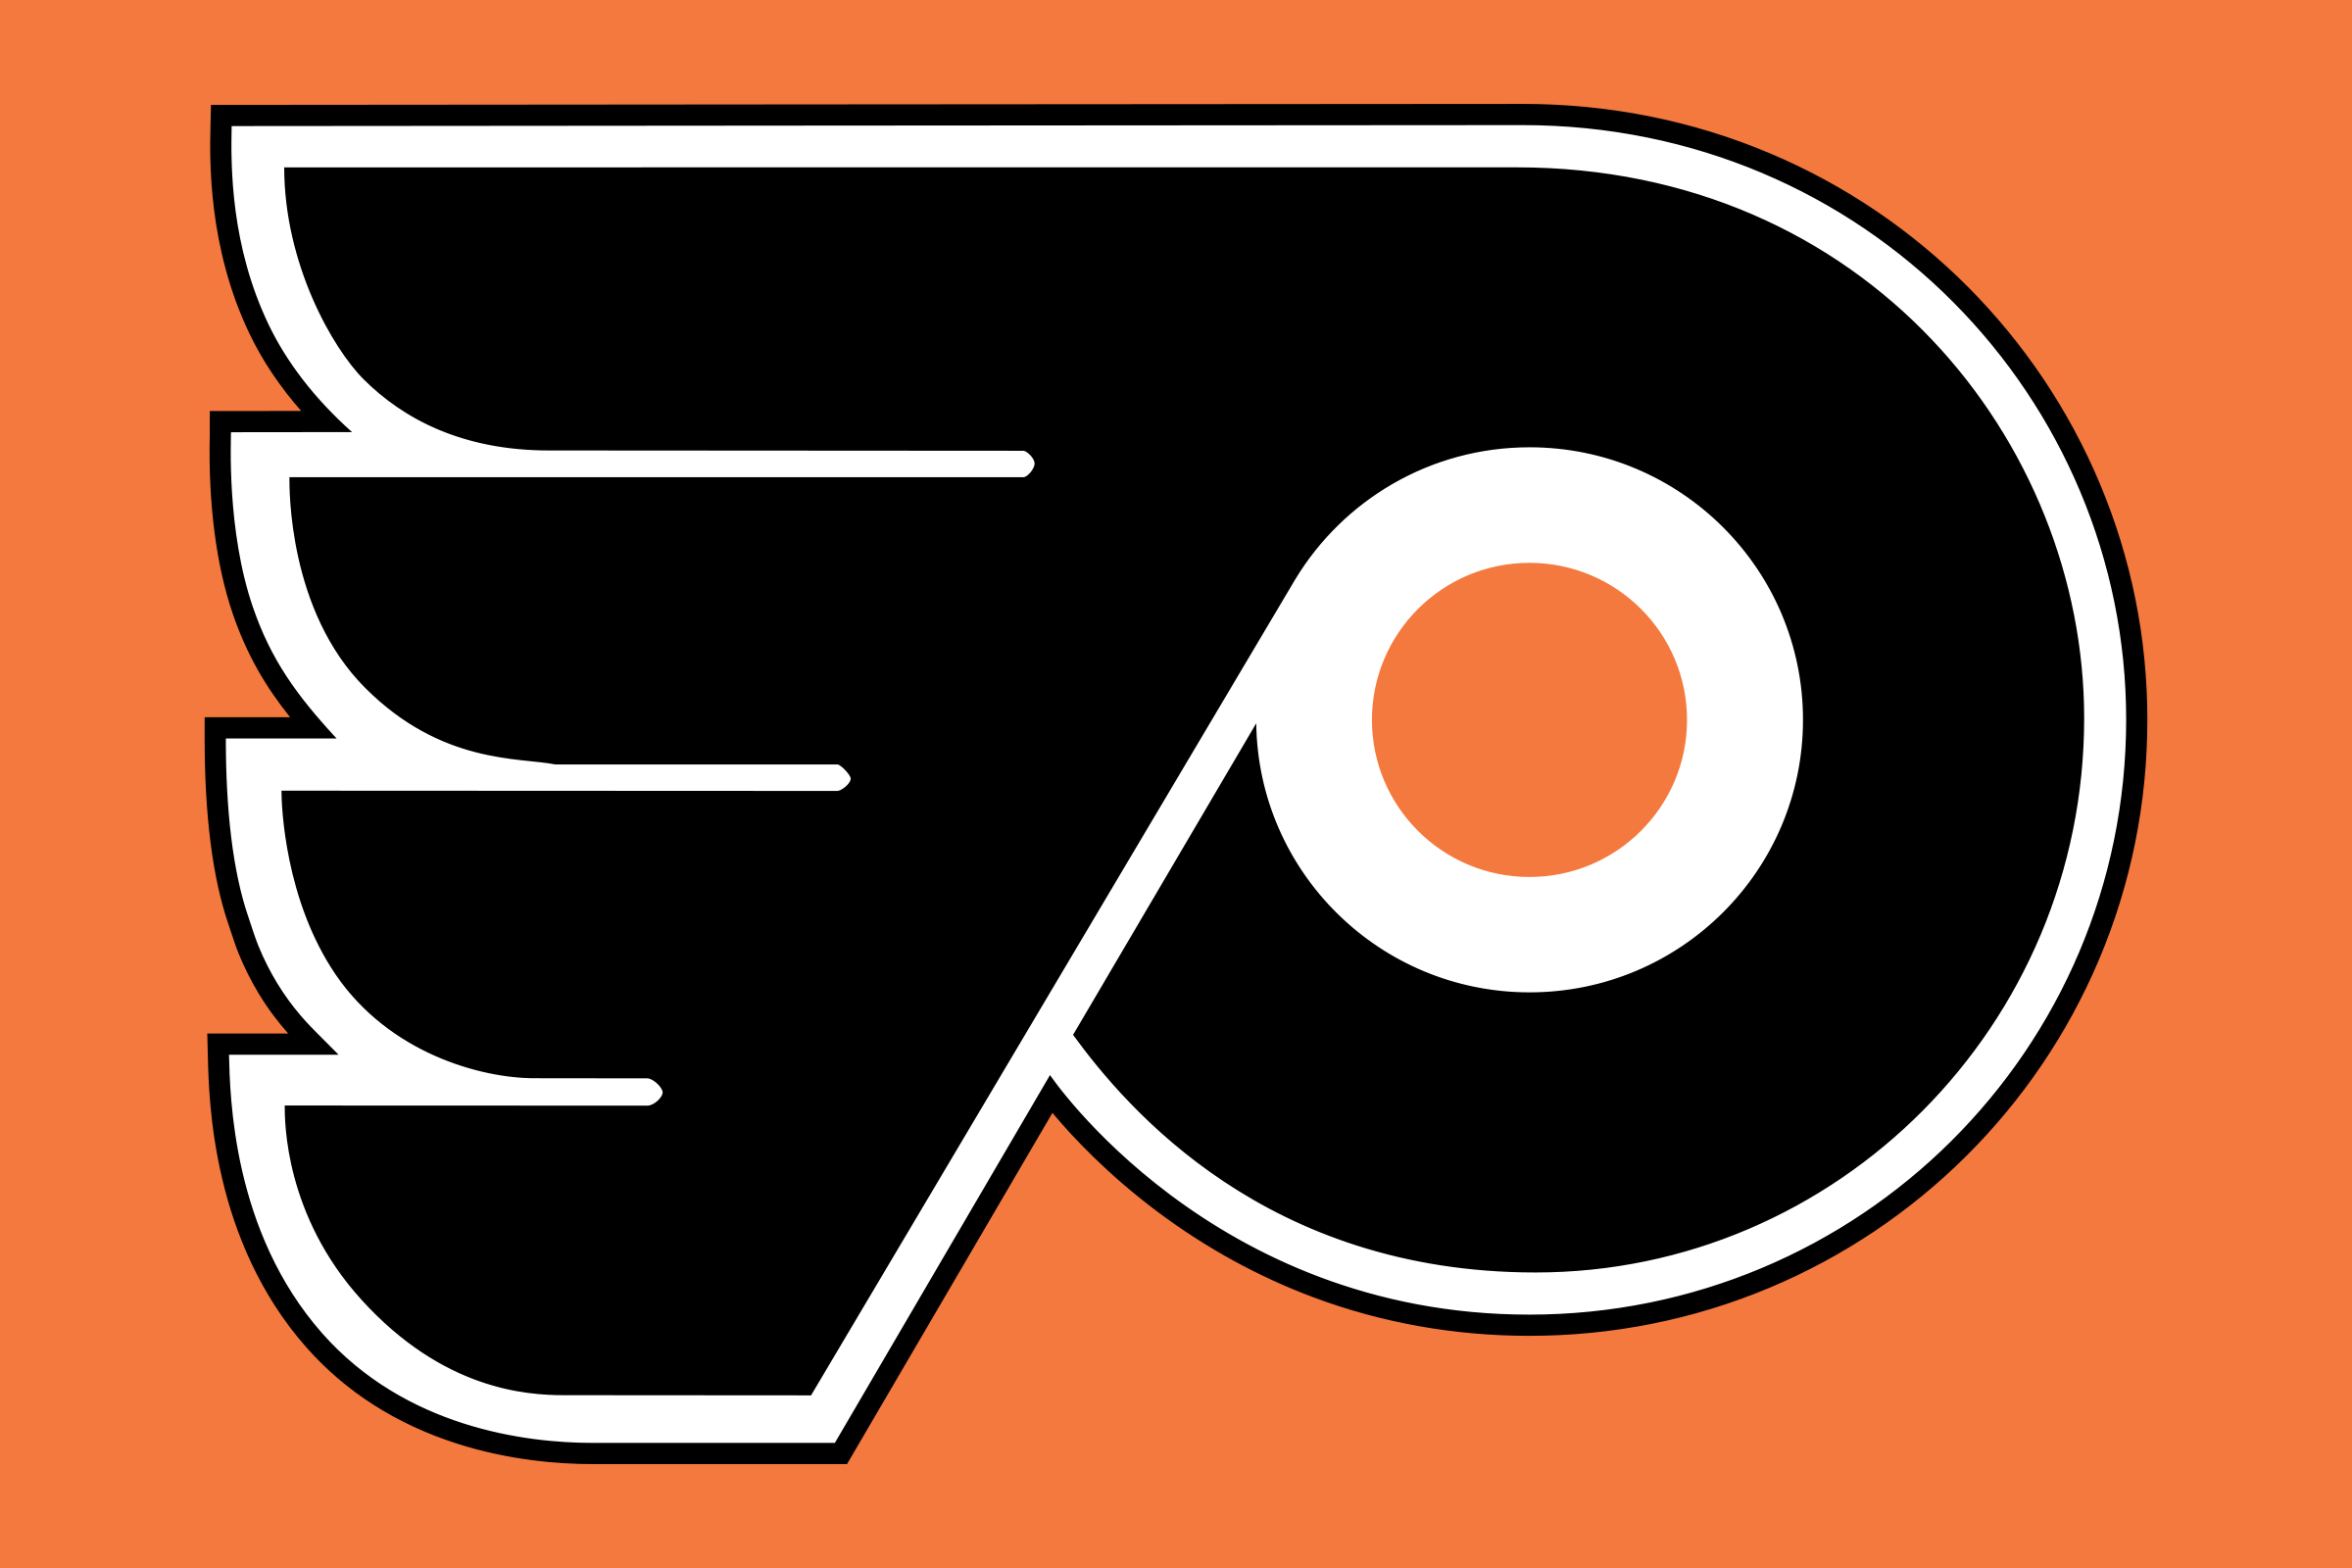 Flyers-Emblem.jpg